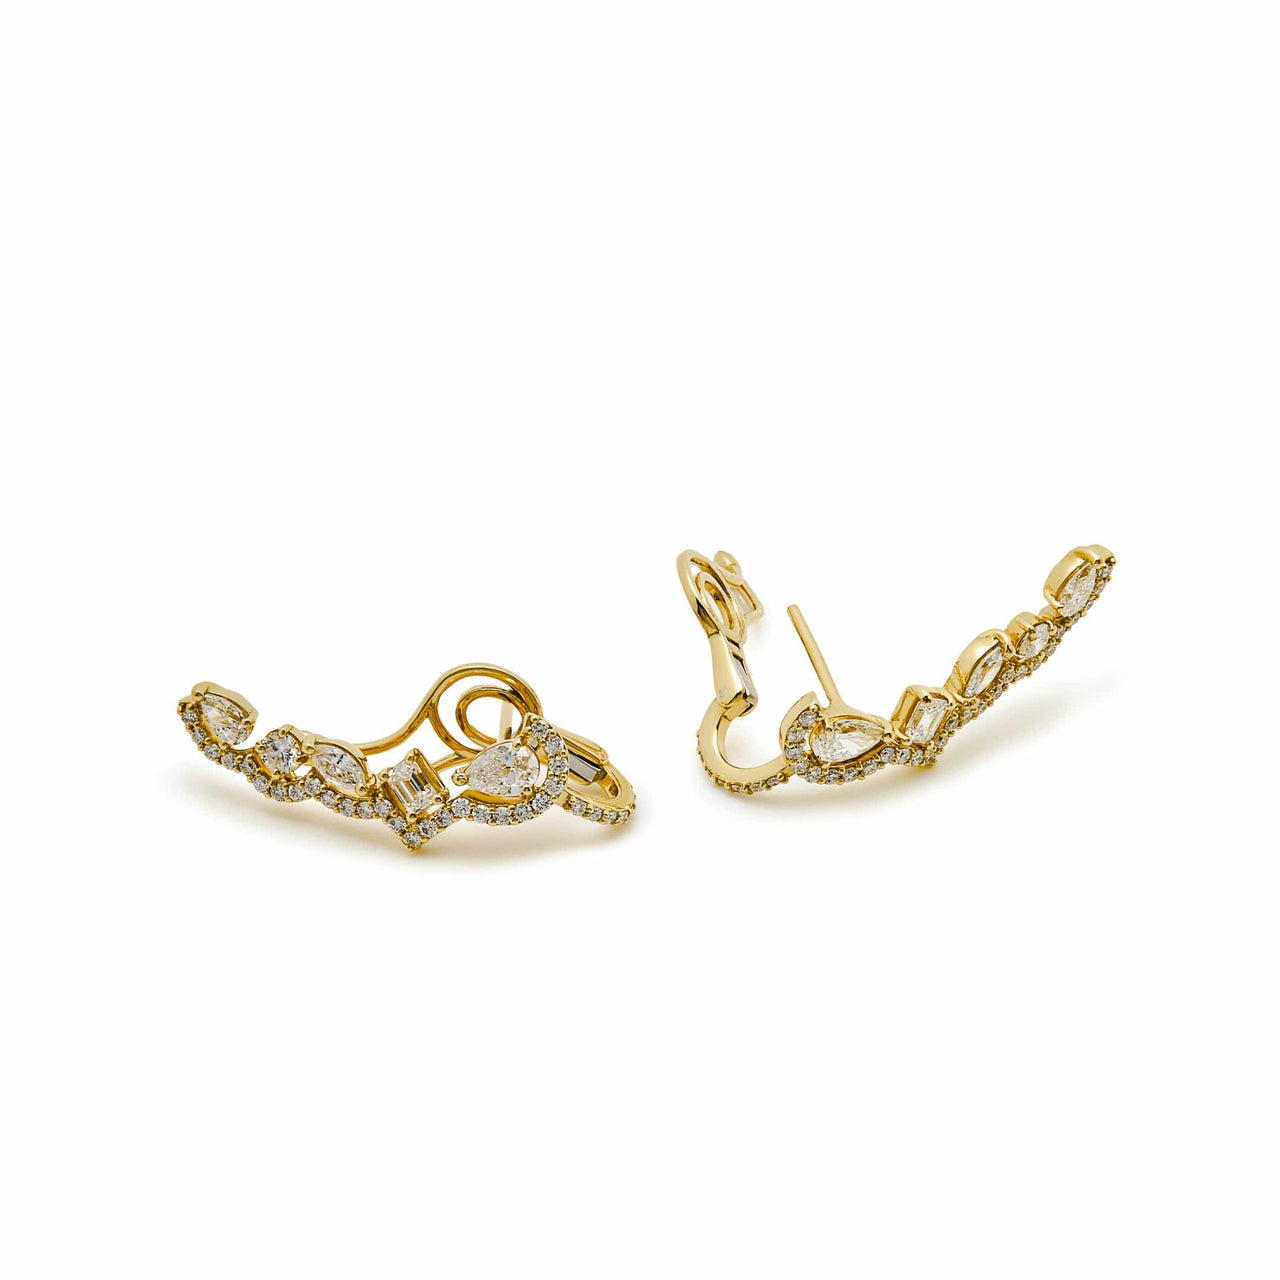 Fancy-Shaped Yellow Diamond Earrings